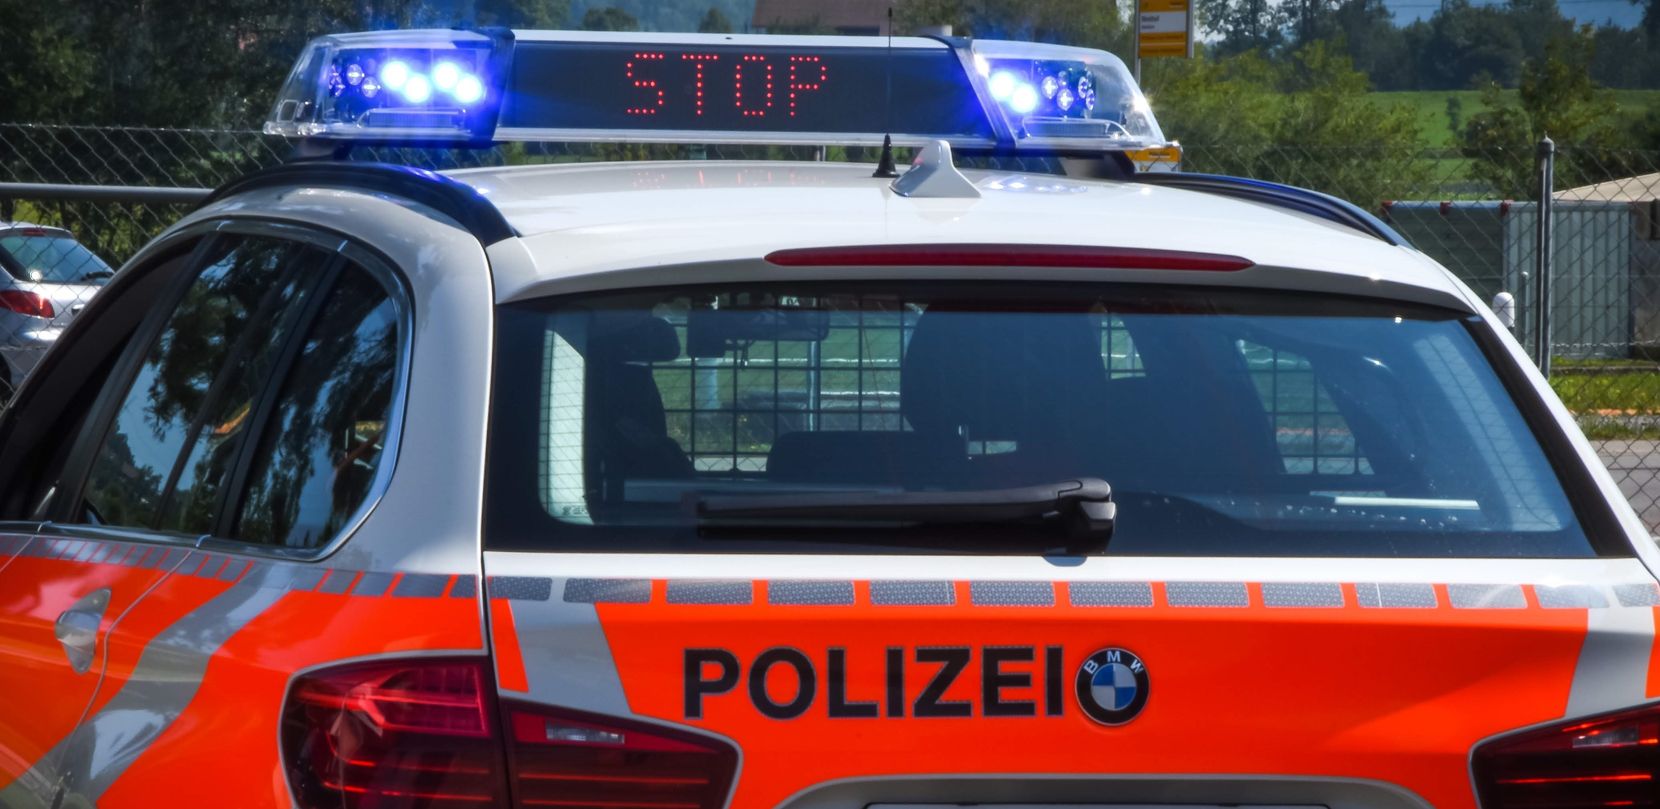 Polizeiauto mit Leuchtschrift.